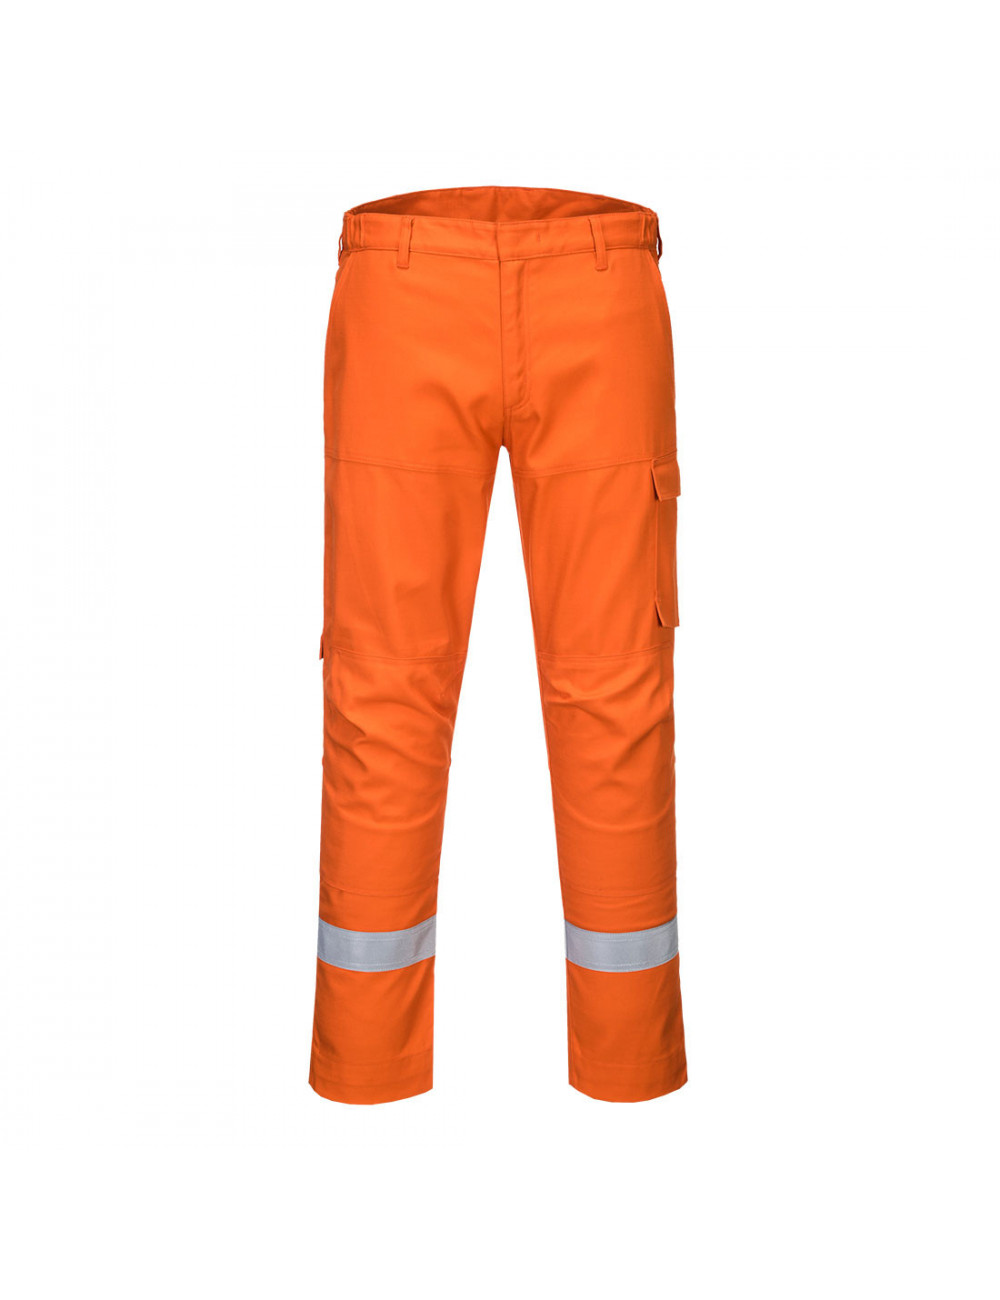 Spodnie bizflame ultra pomarańczowy short Portwest